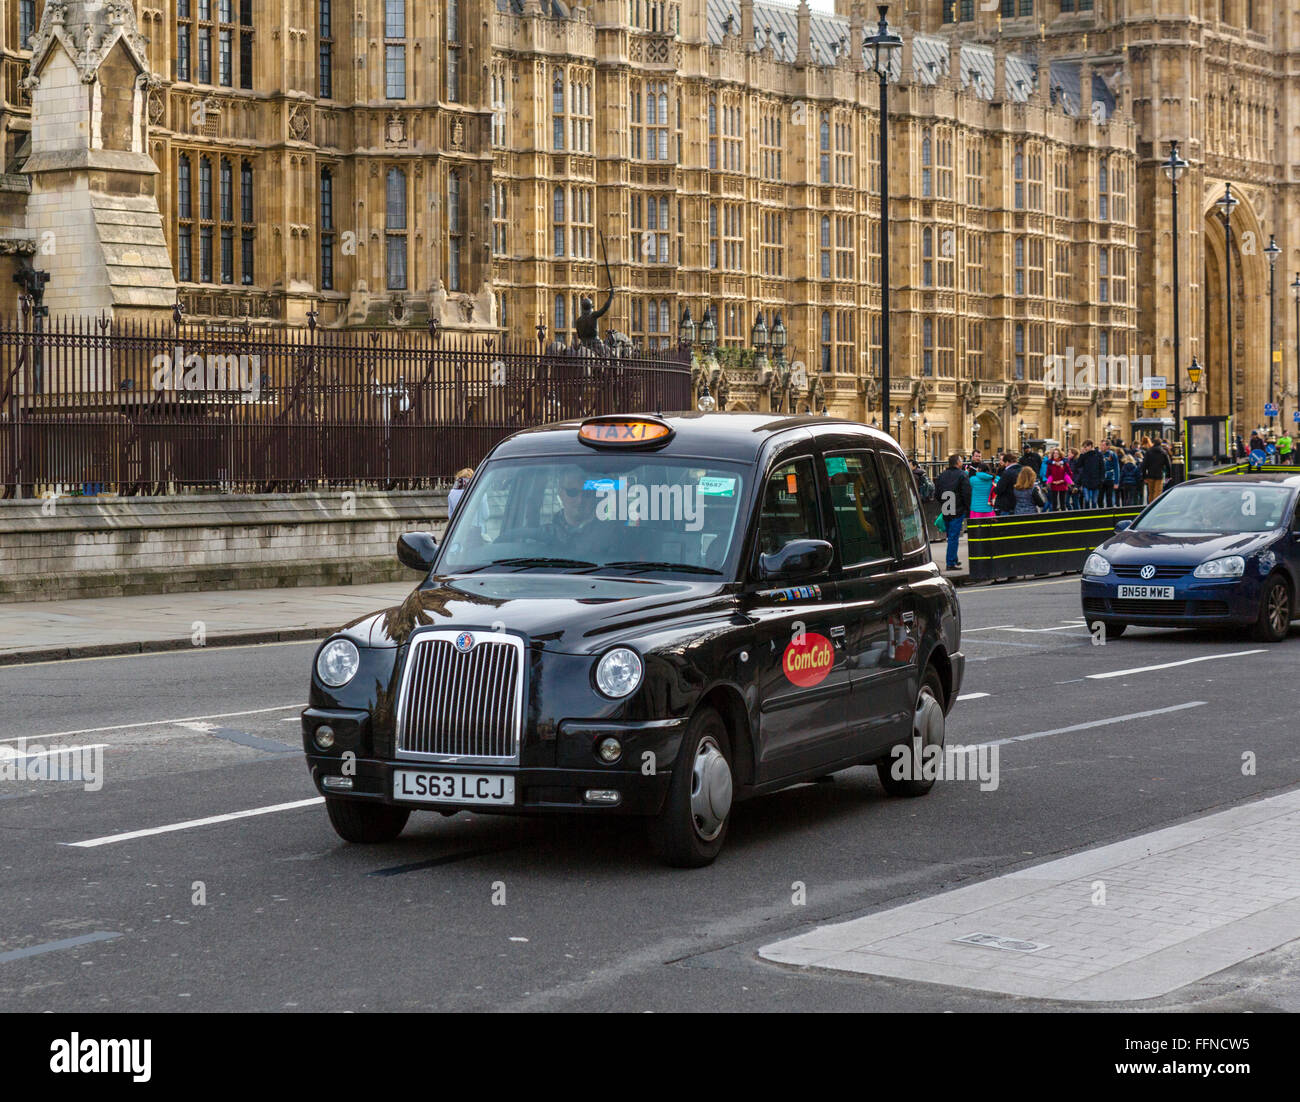 Black Cab devant les Maisons du Parlement (Palais de Westminster), Westminster, London, England, UK Banque D'Images